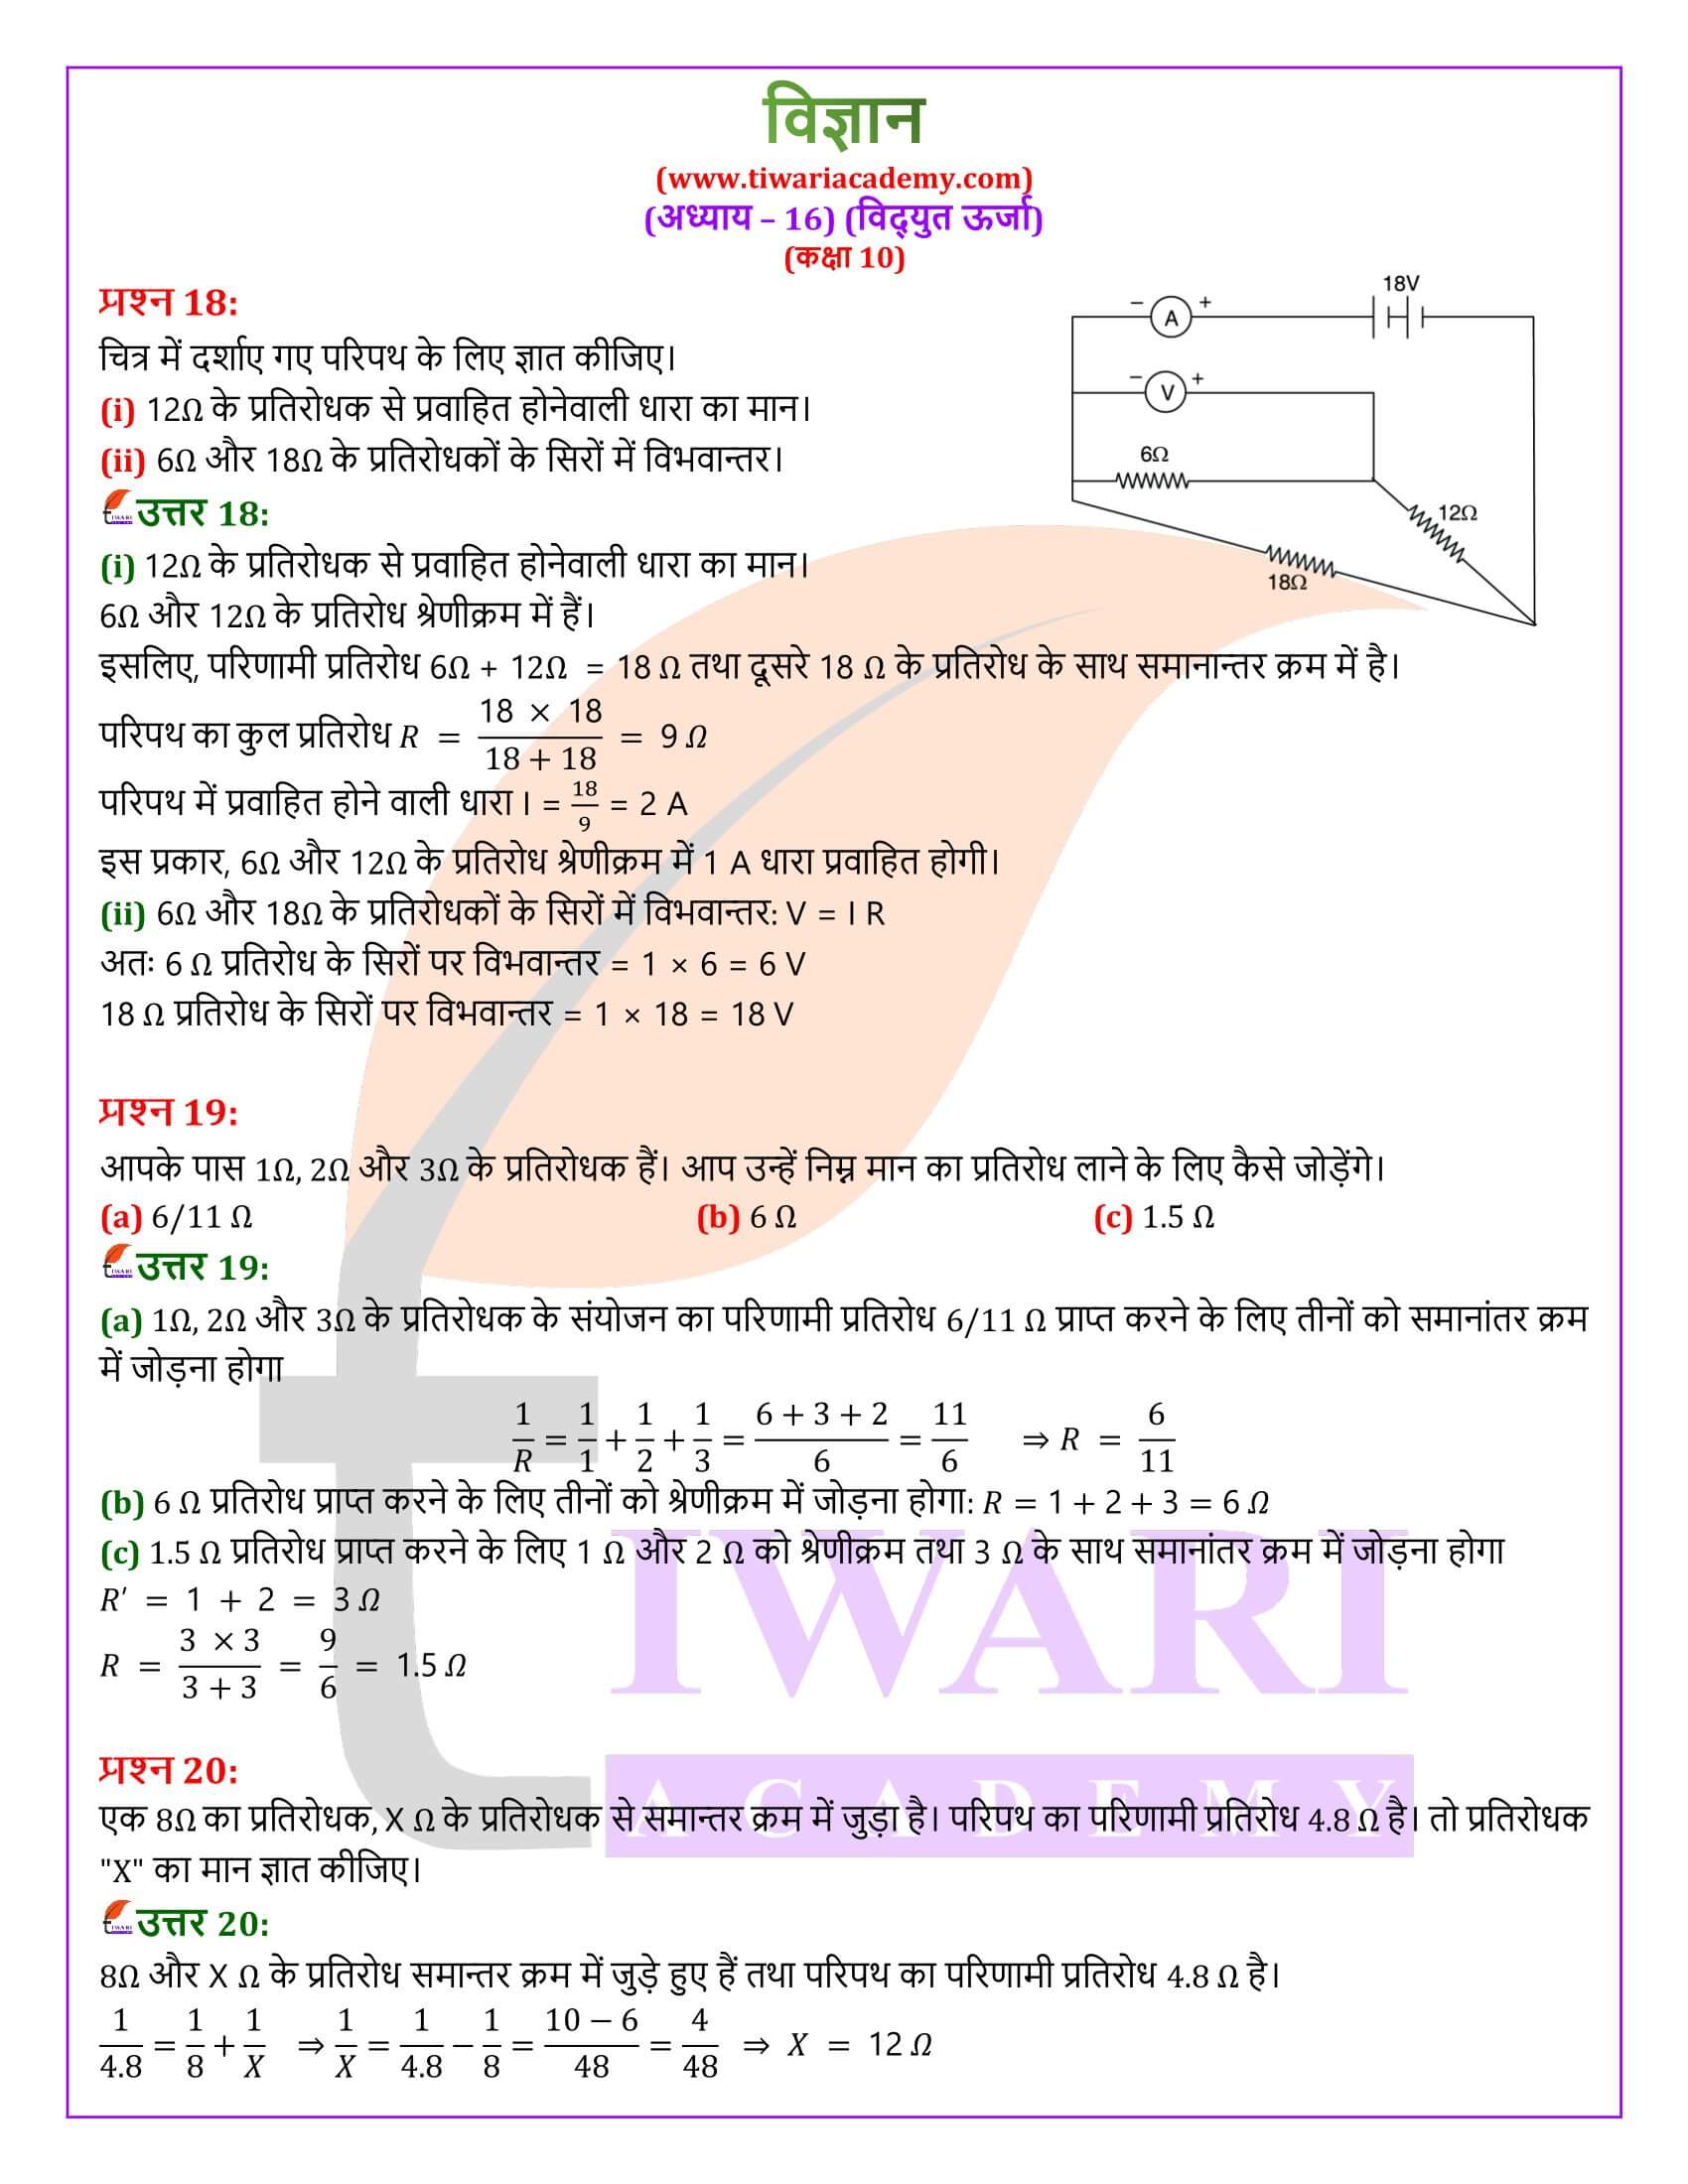 NIOS कक्षा 10 विज्ञान अध्याय 16 हिंदी में हल